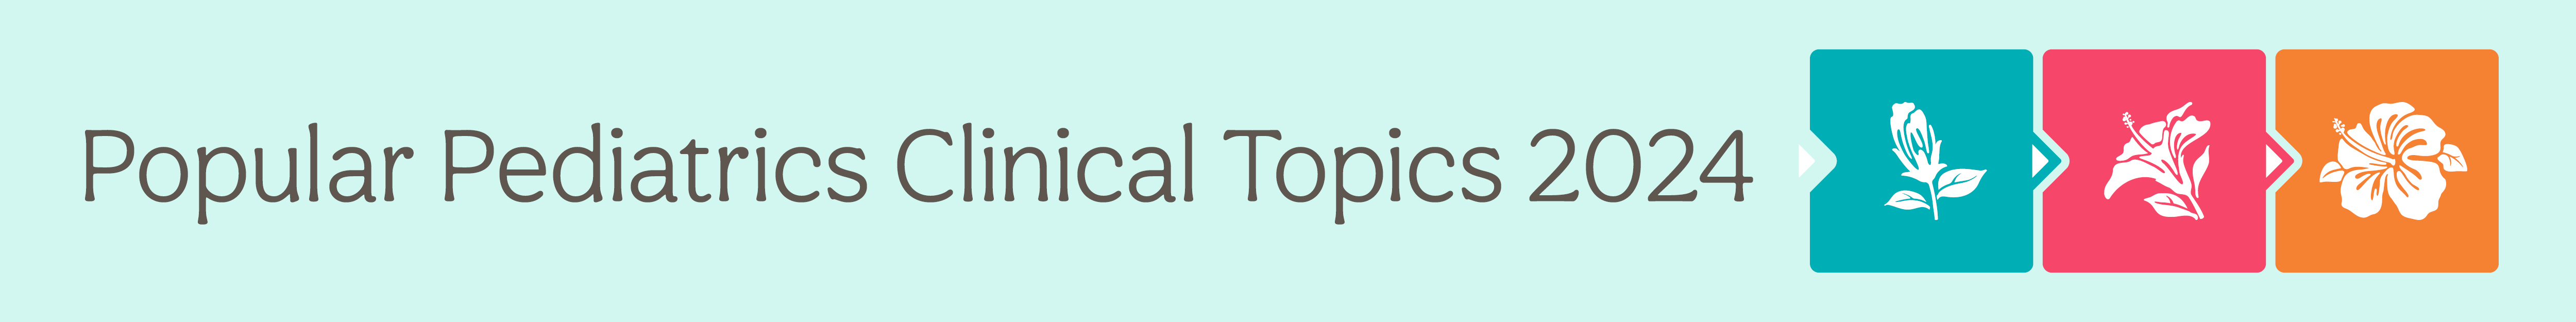  Popular Pediatrics Clinical Topics 2024 Banner